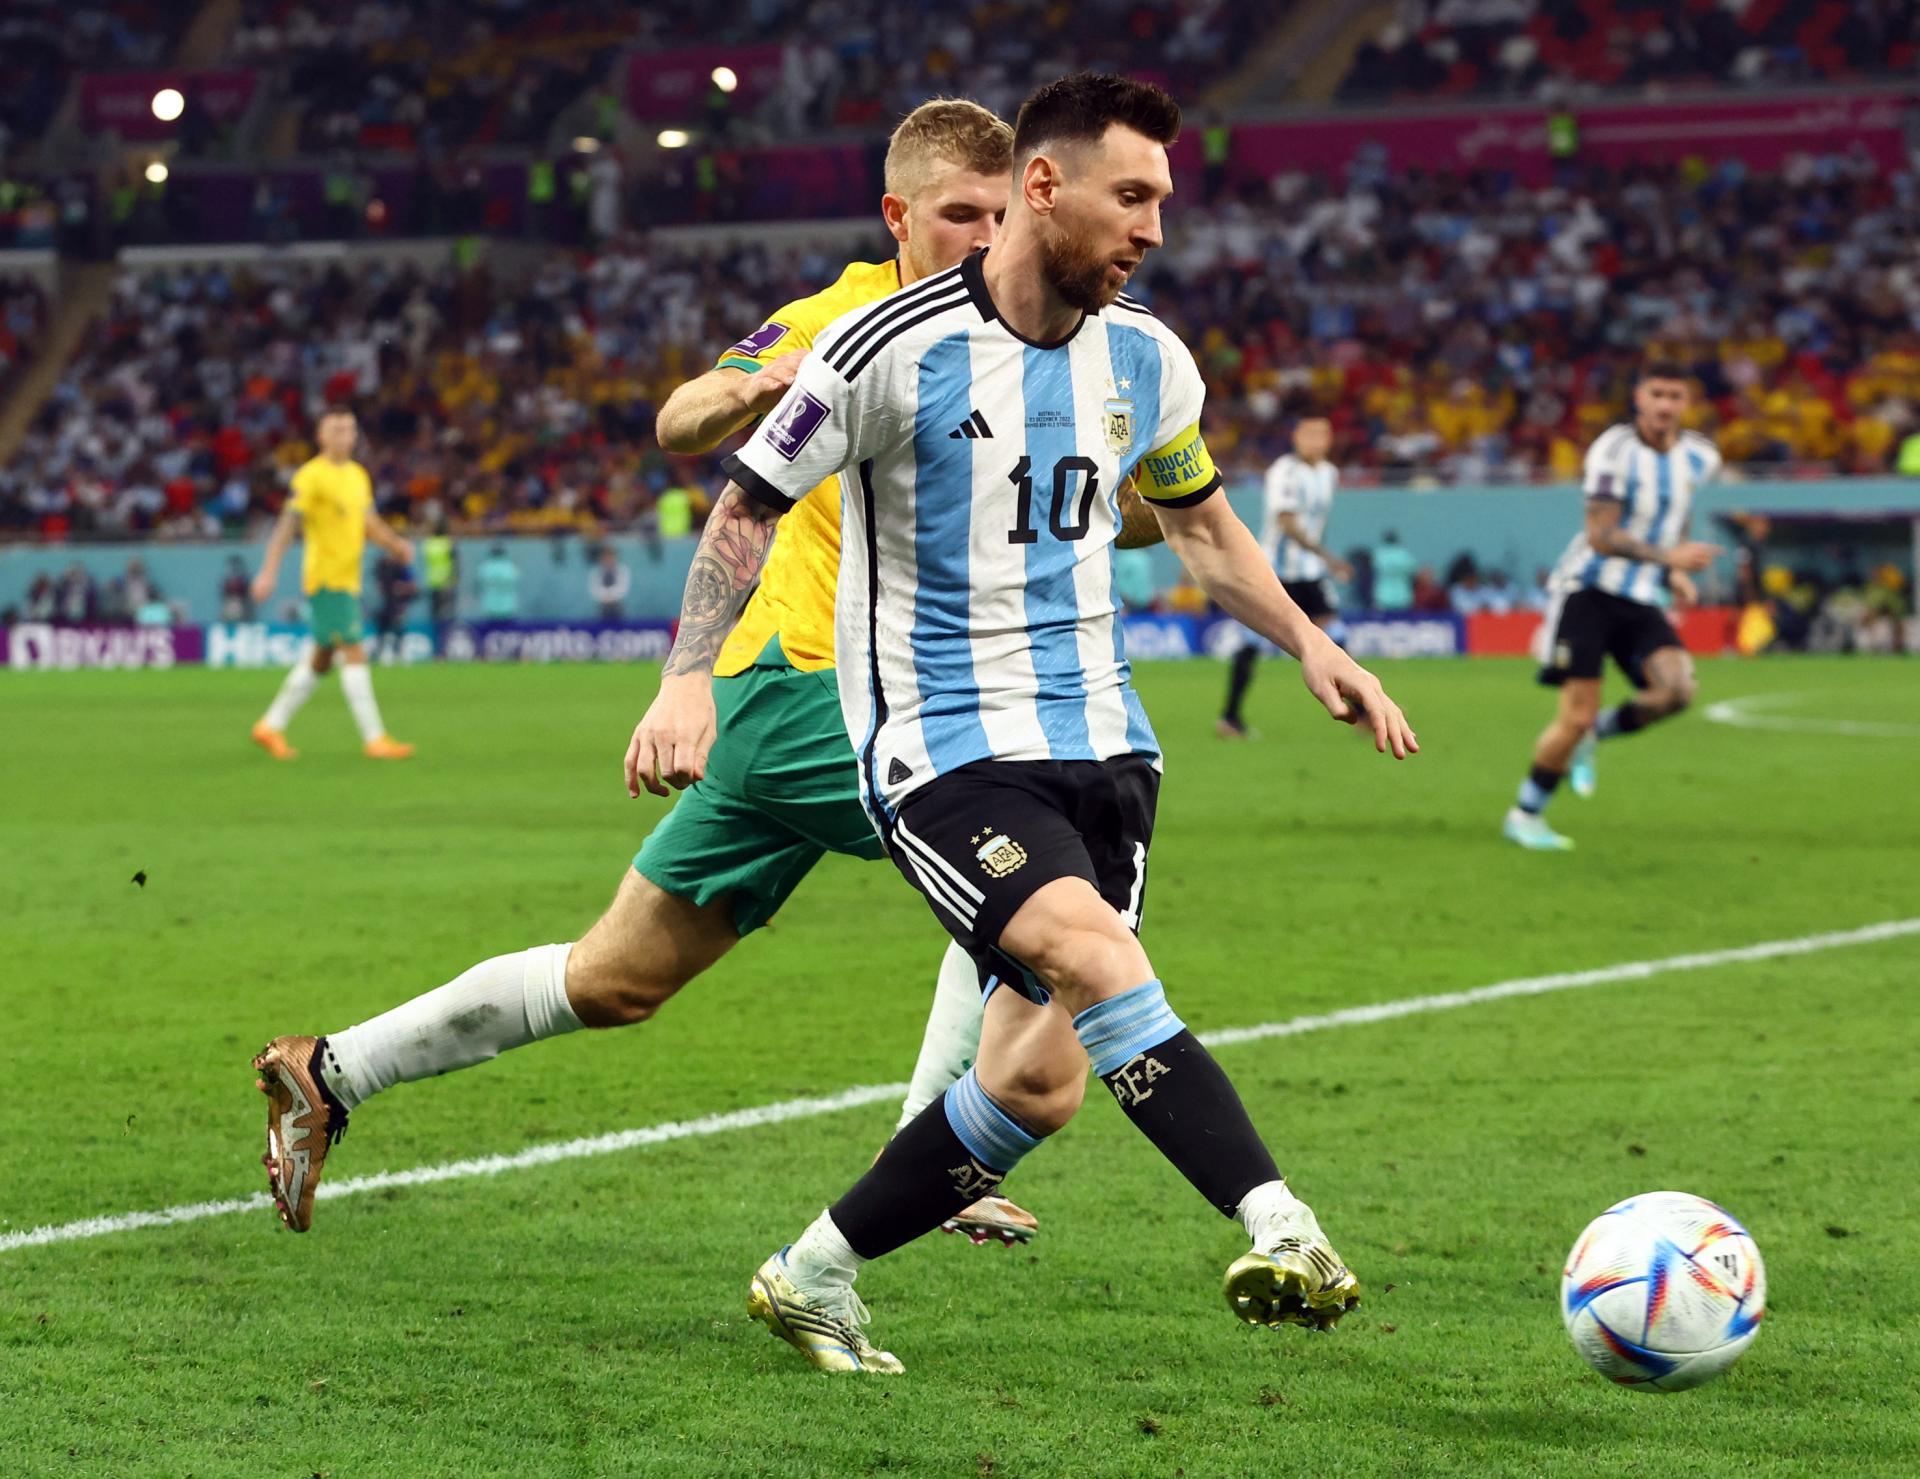 Argentínsky futbalista Messi je na scéne od roku 2004. Proti Austrálii odohral svoj tisíci zápas